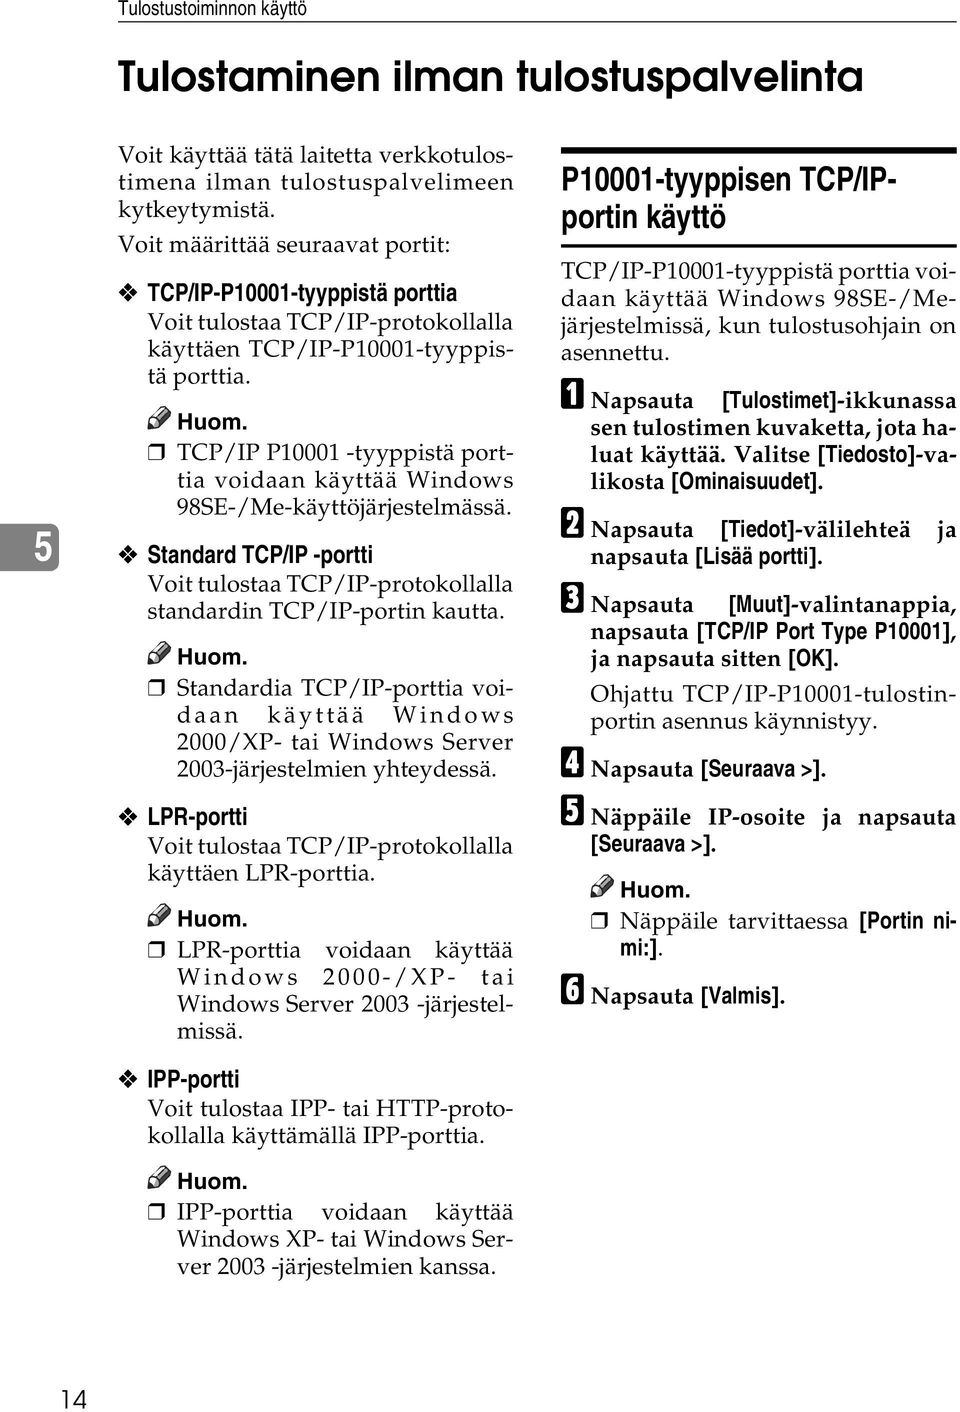 TCP/IP P10001 -tyyppistä porttia voidaan käyttää Windows 98SE-/Me-käyttöjärjestelmässä. Standard TCP/IP -portti Voit tulostaa TCP/IP-protokollalla standardin TCP/IP-portin kautta.